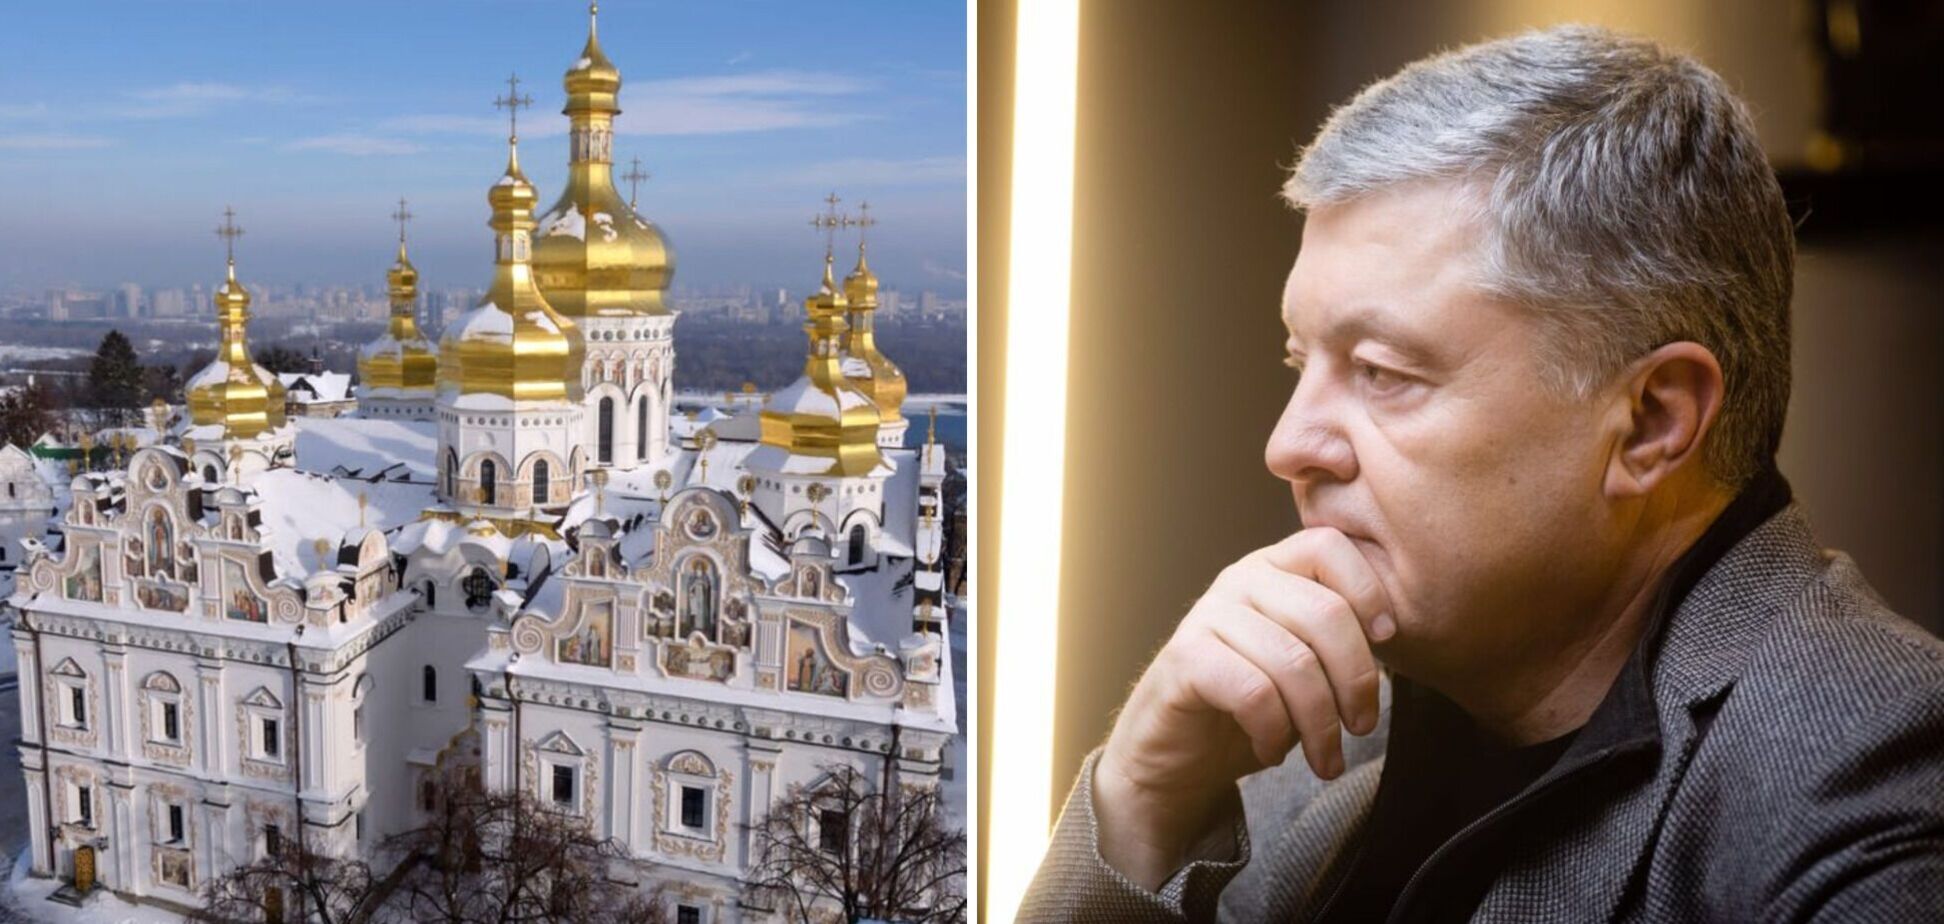 Лавра должна быть духовным центром украинской церкви, а не псевдорелигиозной структуры РФ, – Порошенко